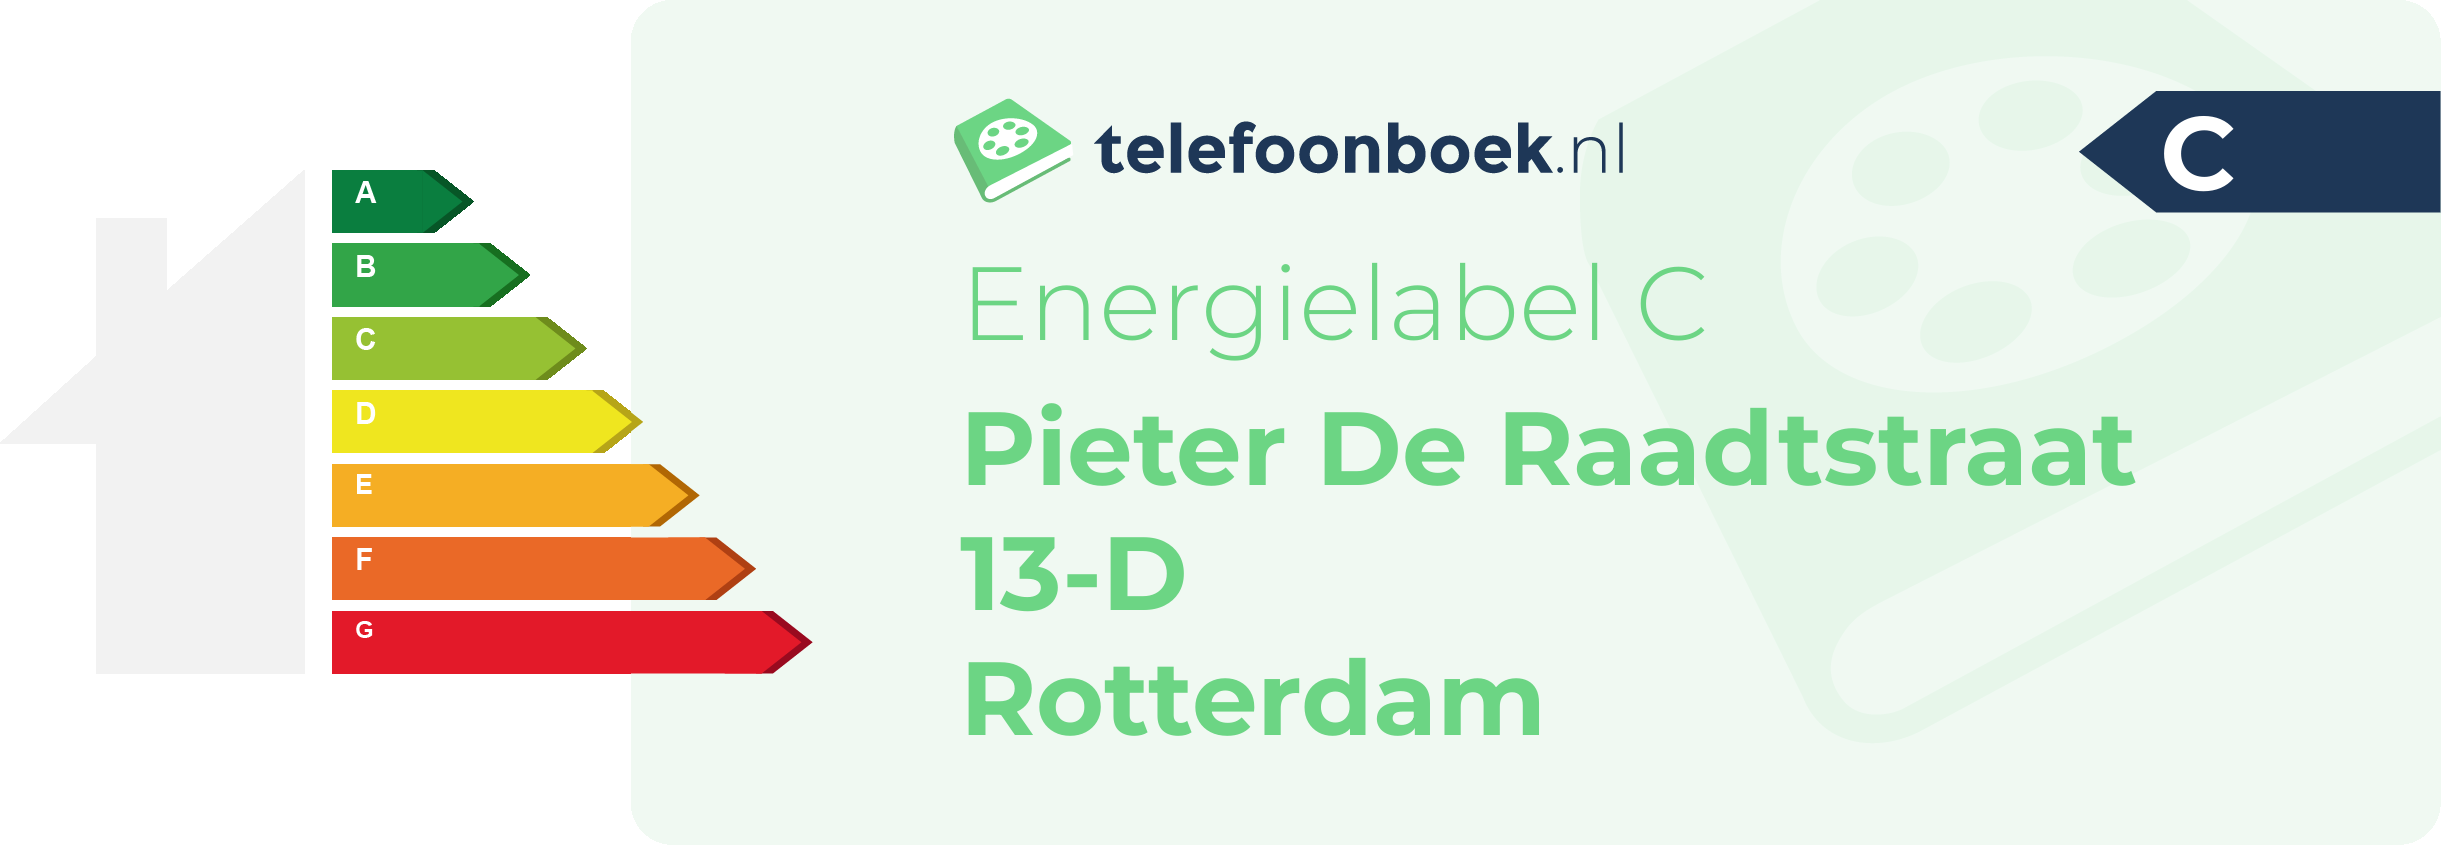 Energielabel Pieter De Raadtstraat 13-D Rotterdam